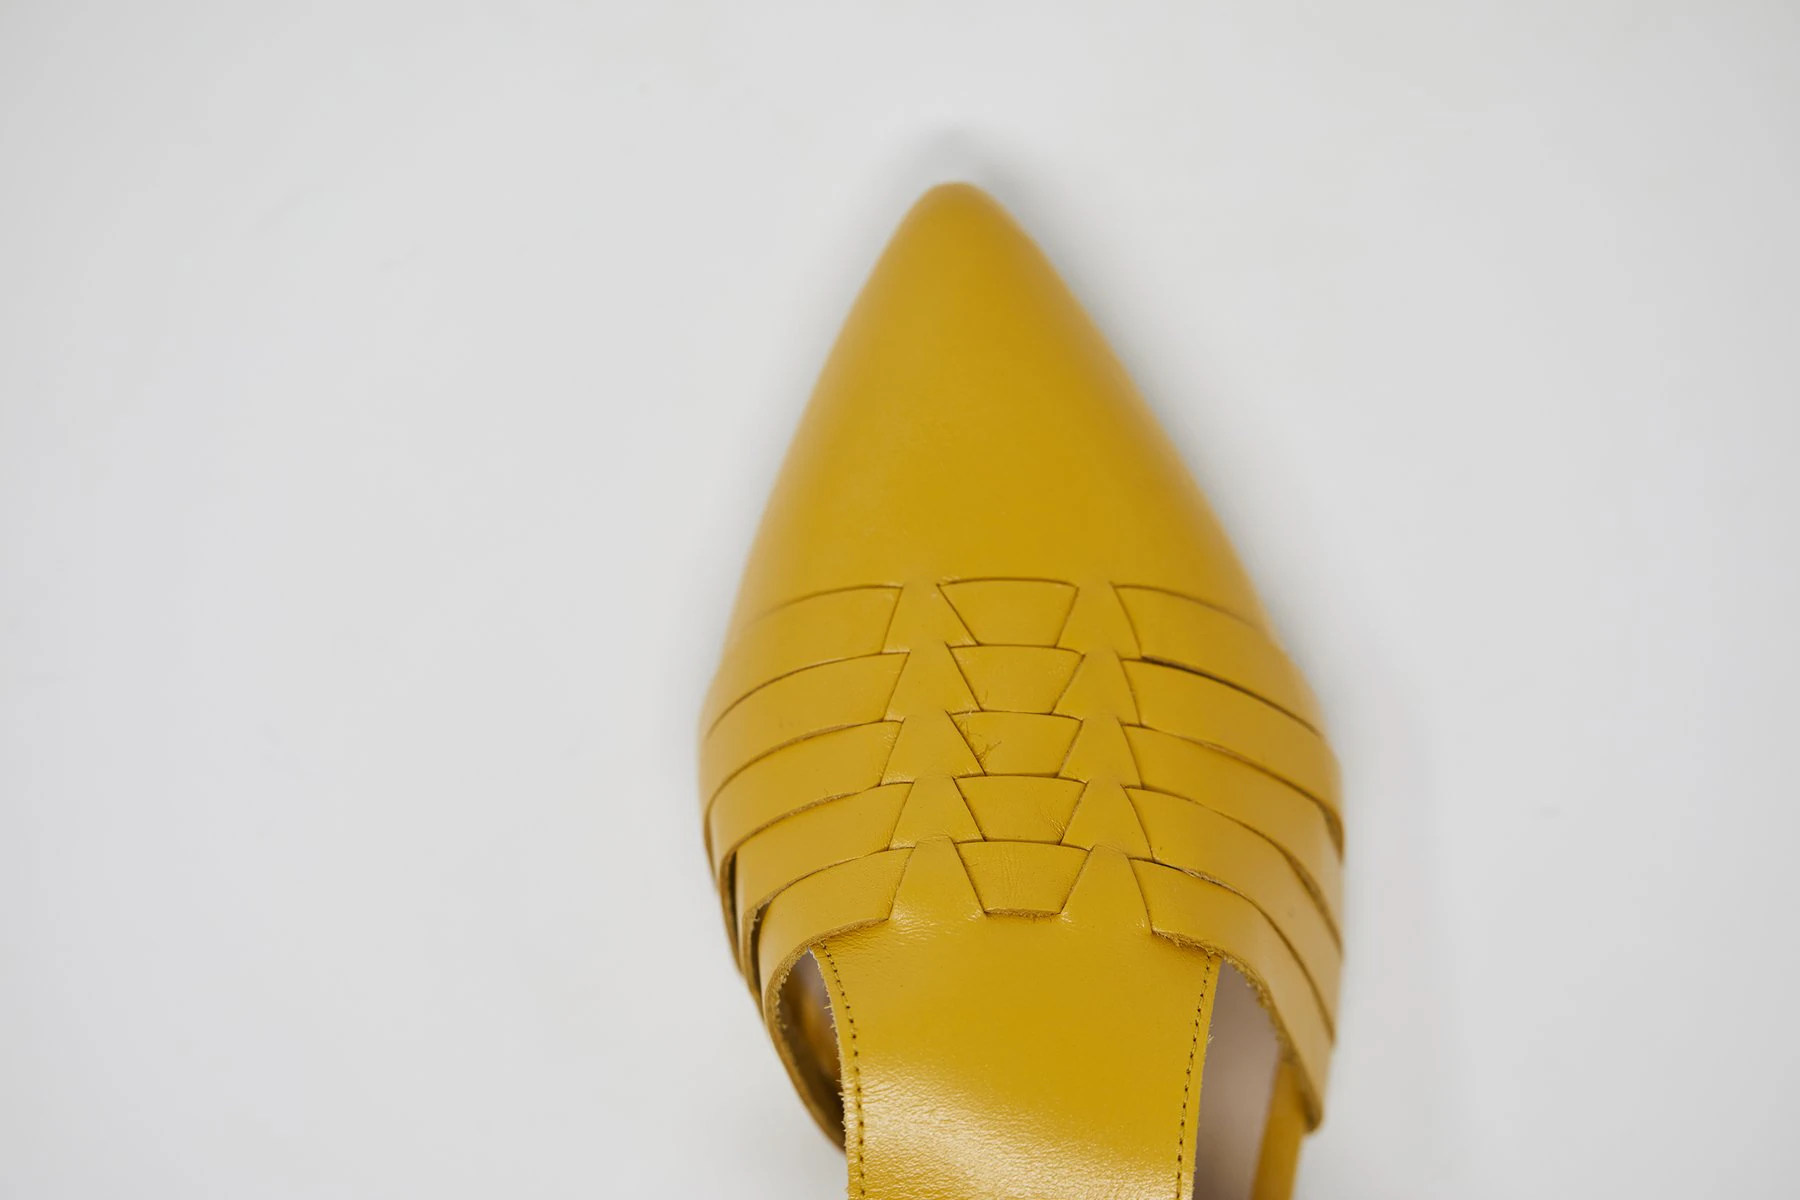 La comunicadora ha lanzado unas sandalias junto a la firma española de calzado 5yMedio, que han recibido numerosas criticas por su precio